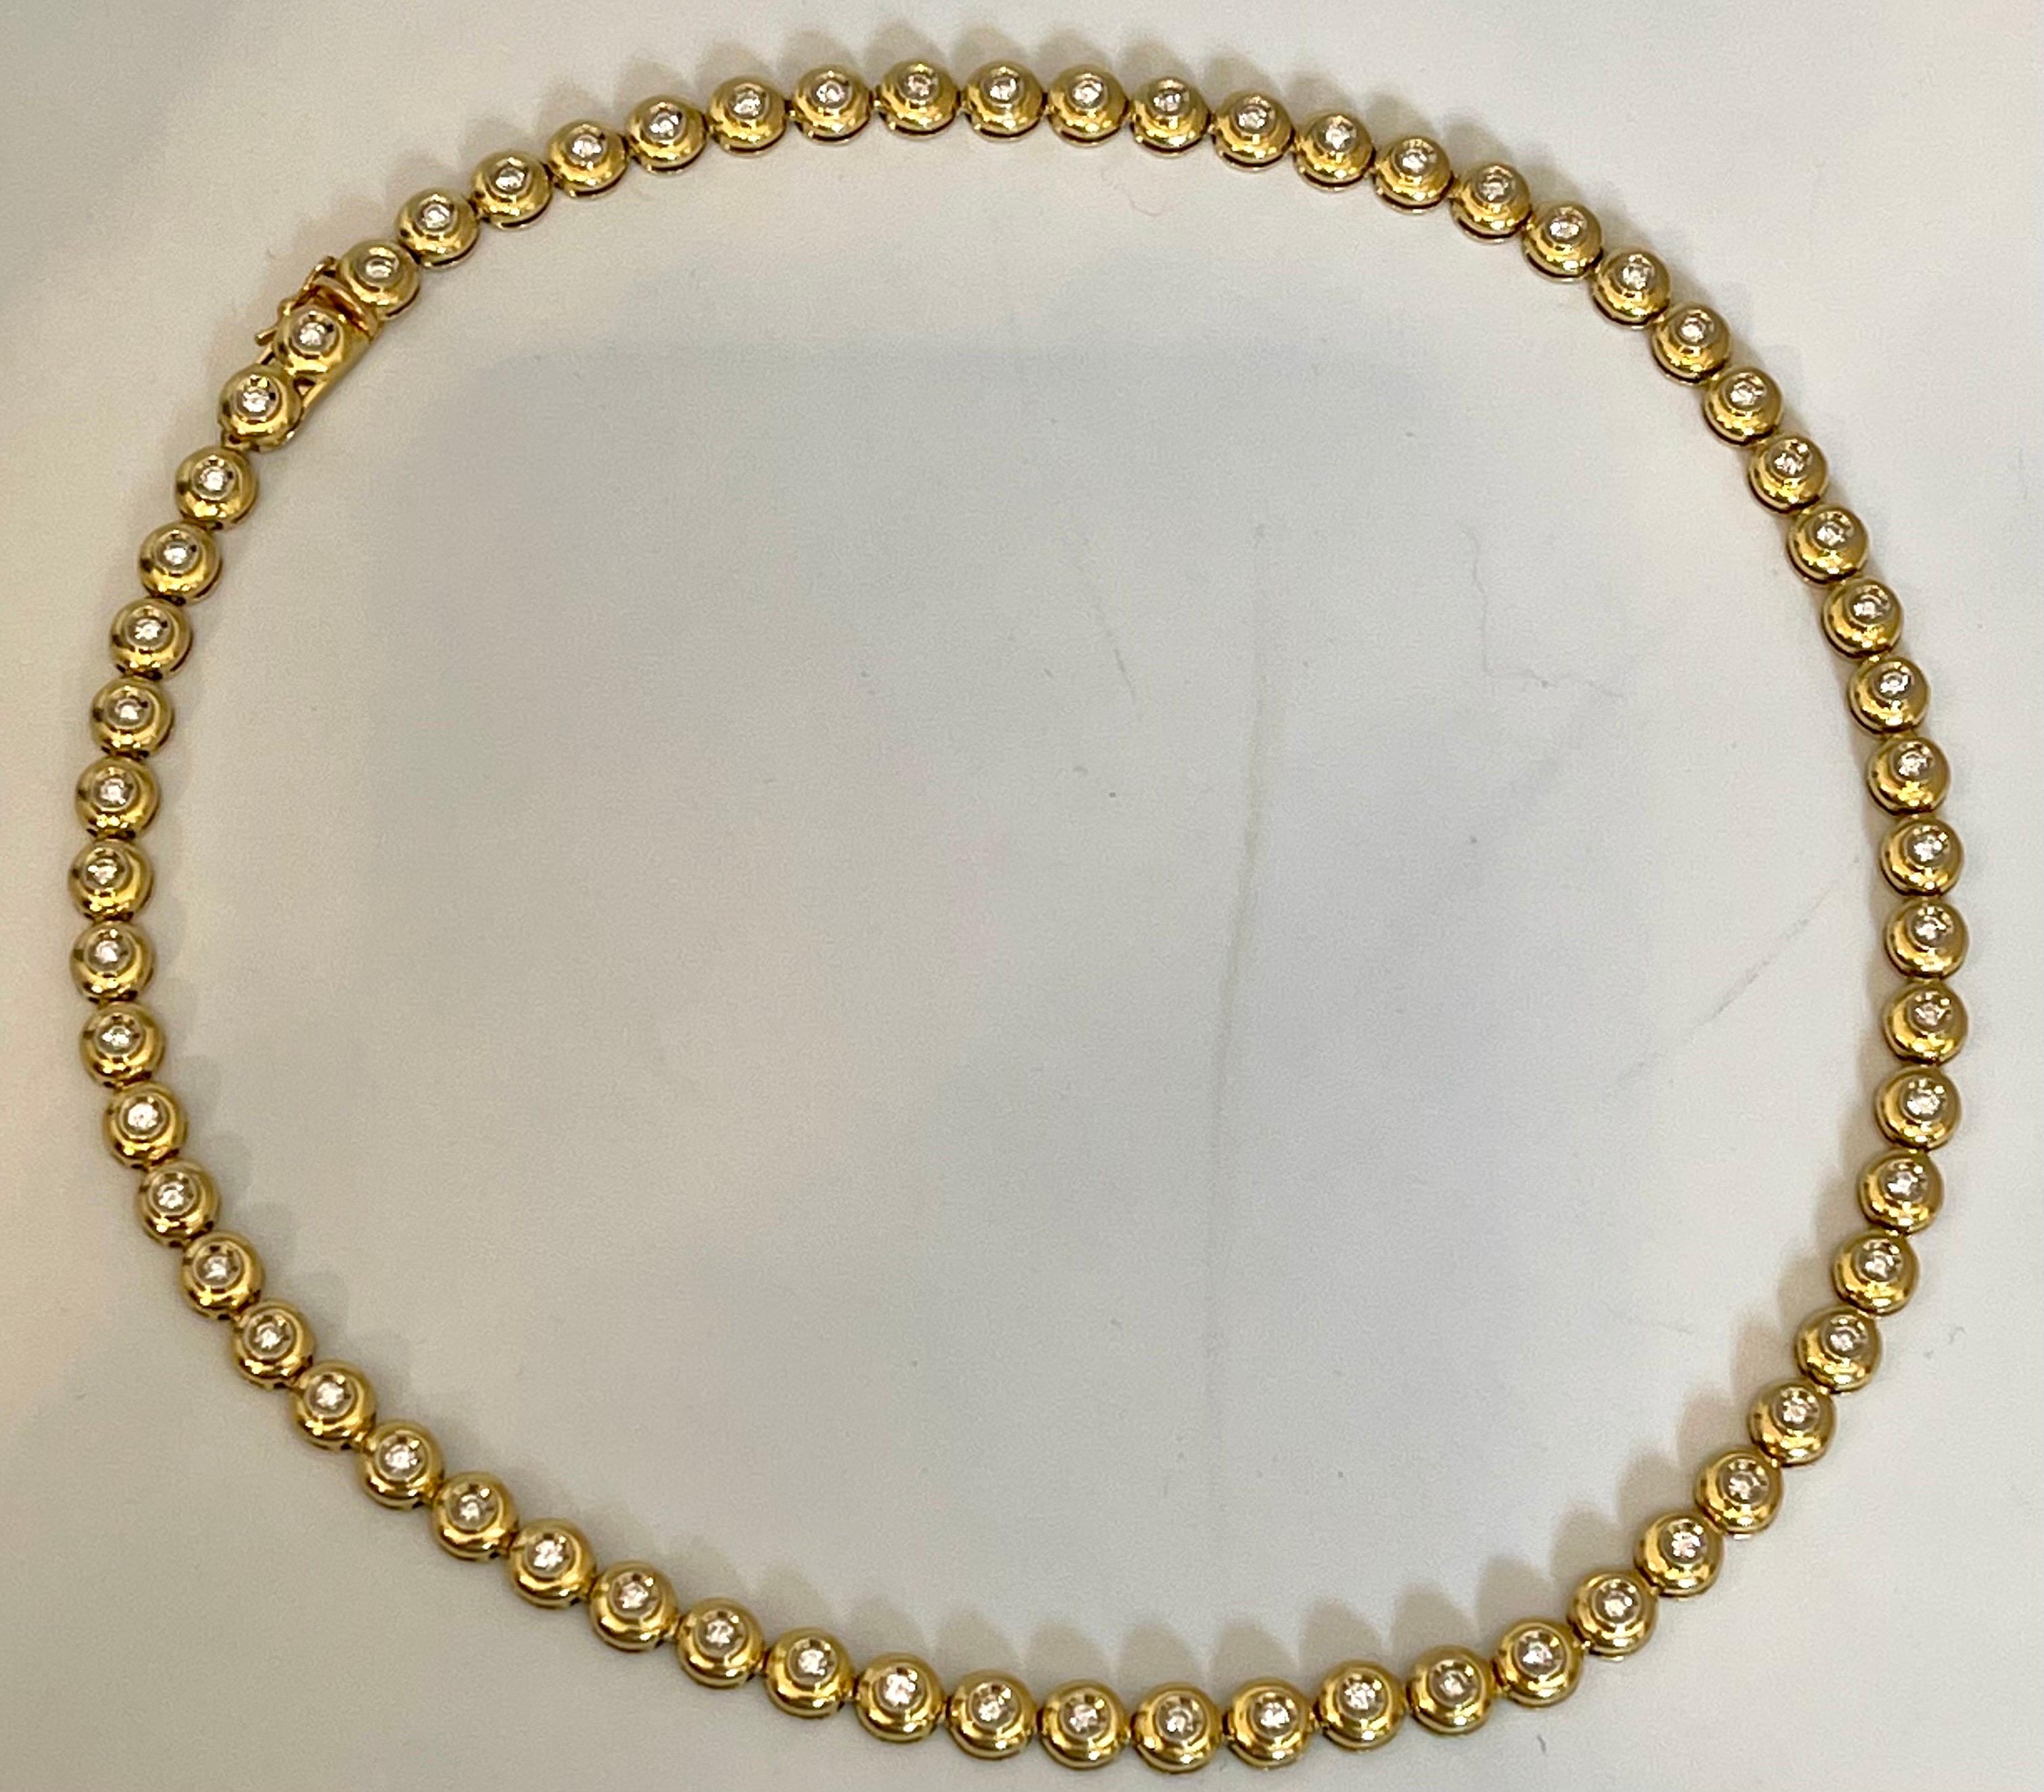 Round 6 Pointer, 4.5Ct Diamond Tennis Necklace 18Karat Yellow Gold 52 Gm, Unisex 5